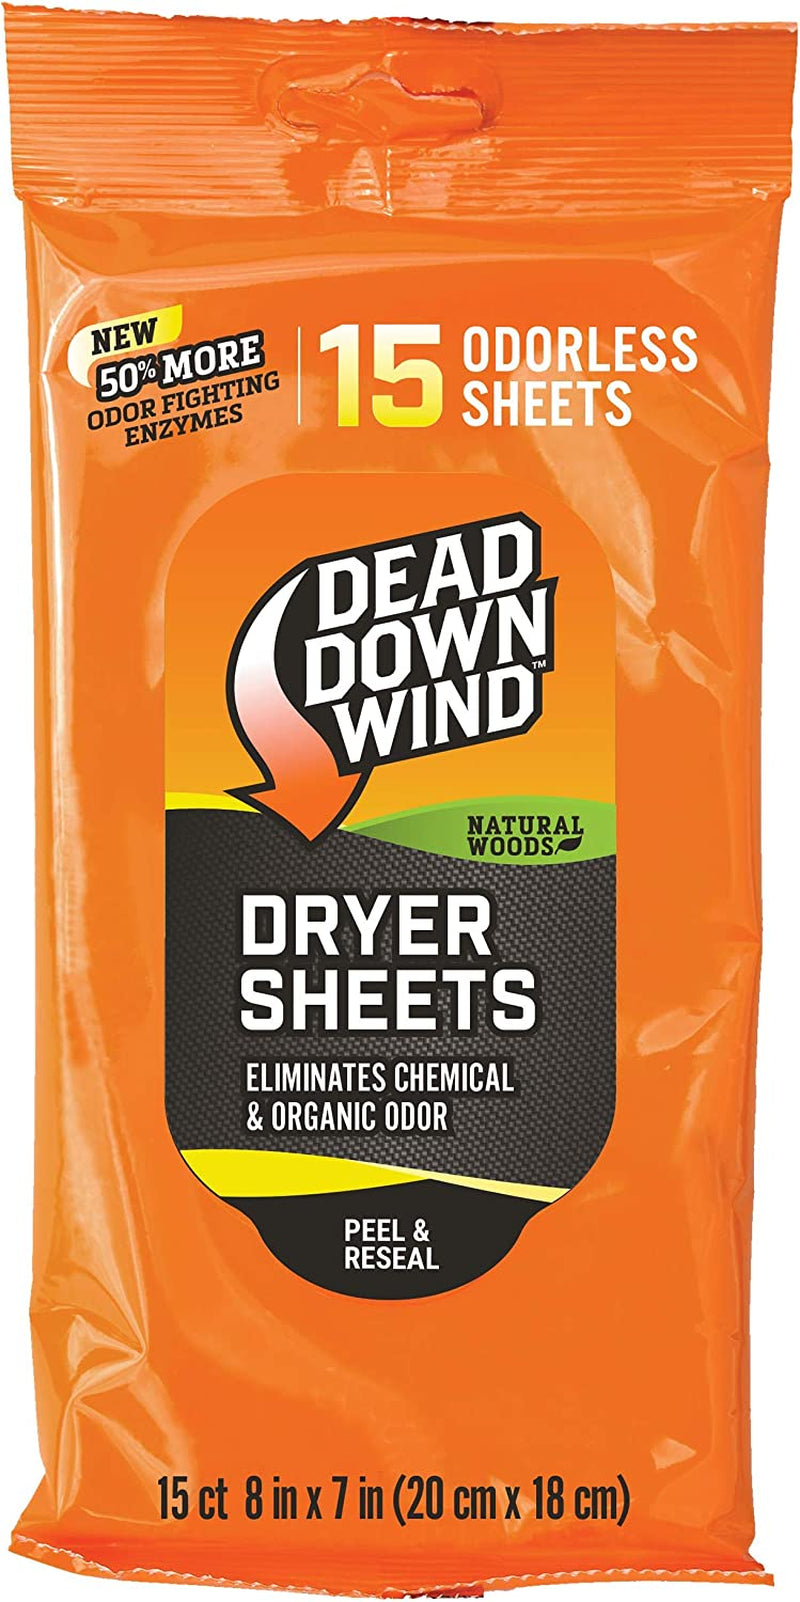 Dead down Wind Dryer Sheets